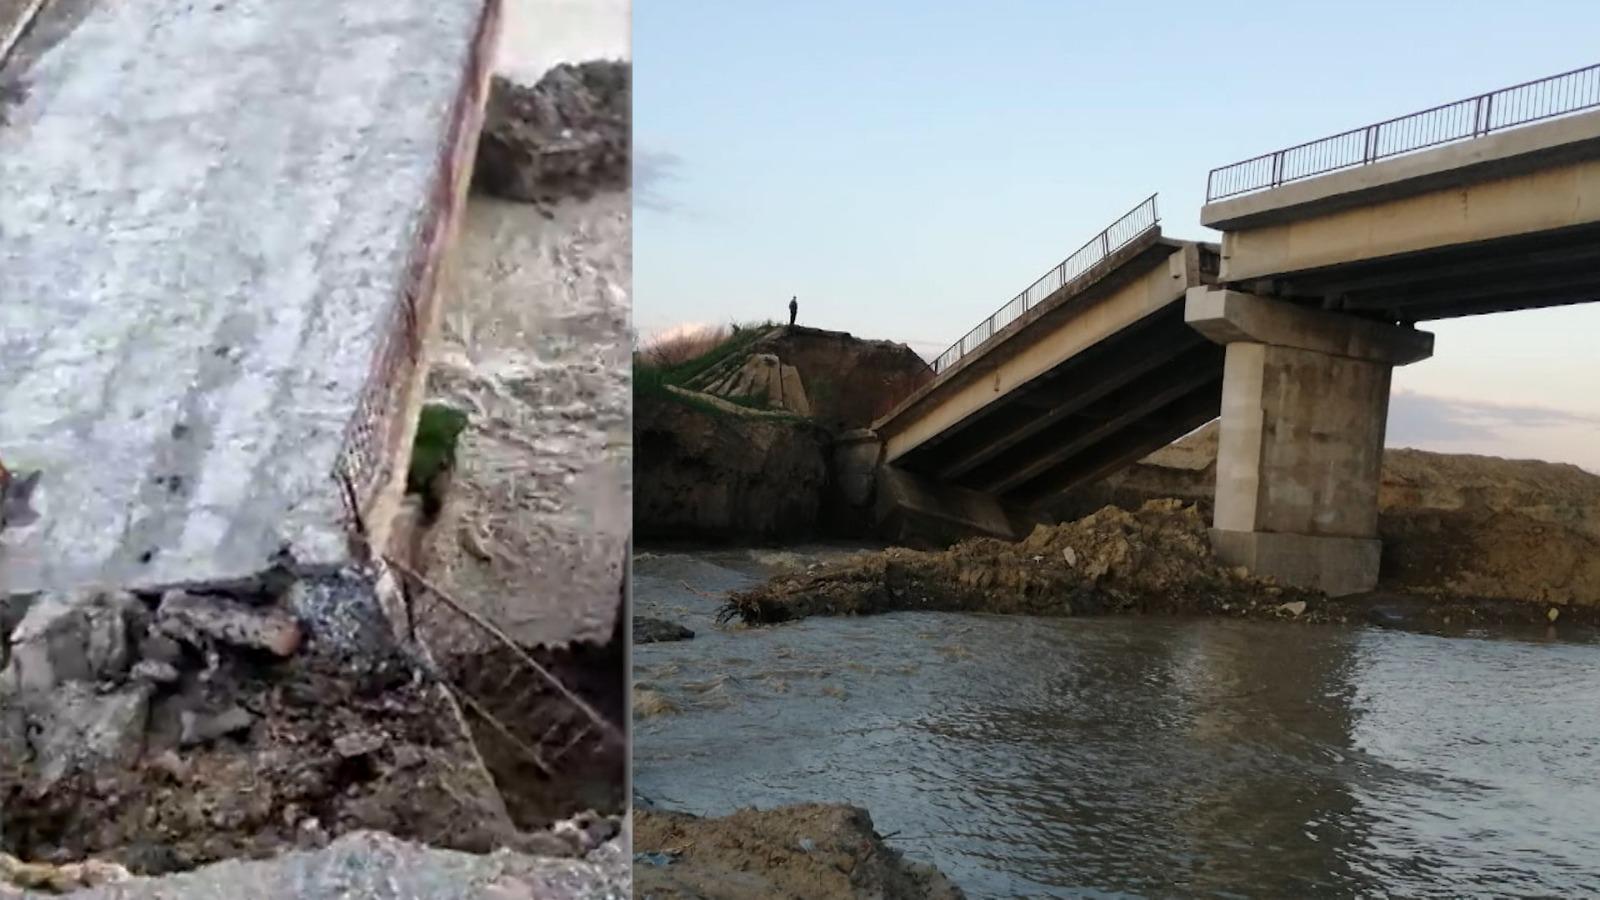 O treime din podurile din România ar trebui închise. Un pod din Vrancea, aflat în reabilitare, s-a prăbuşit peste râul Putna